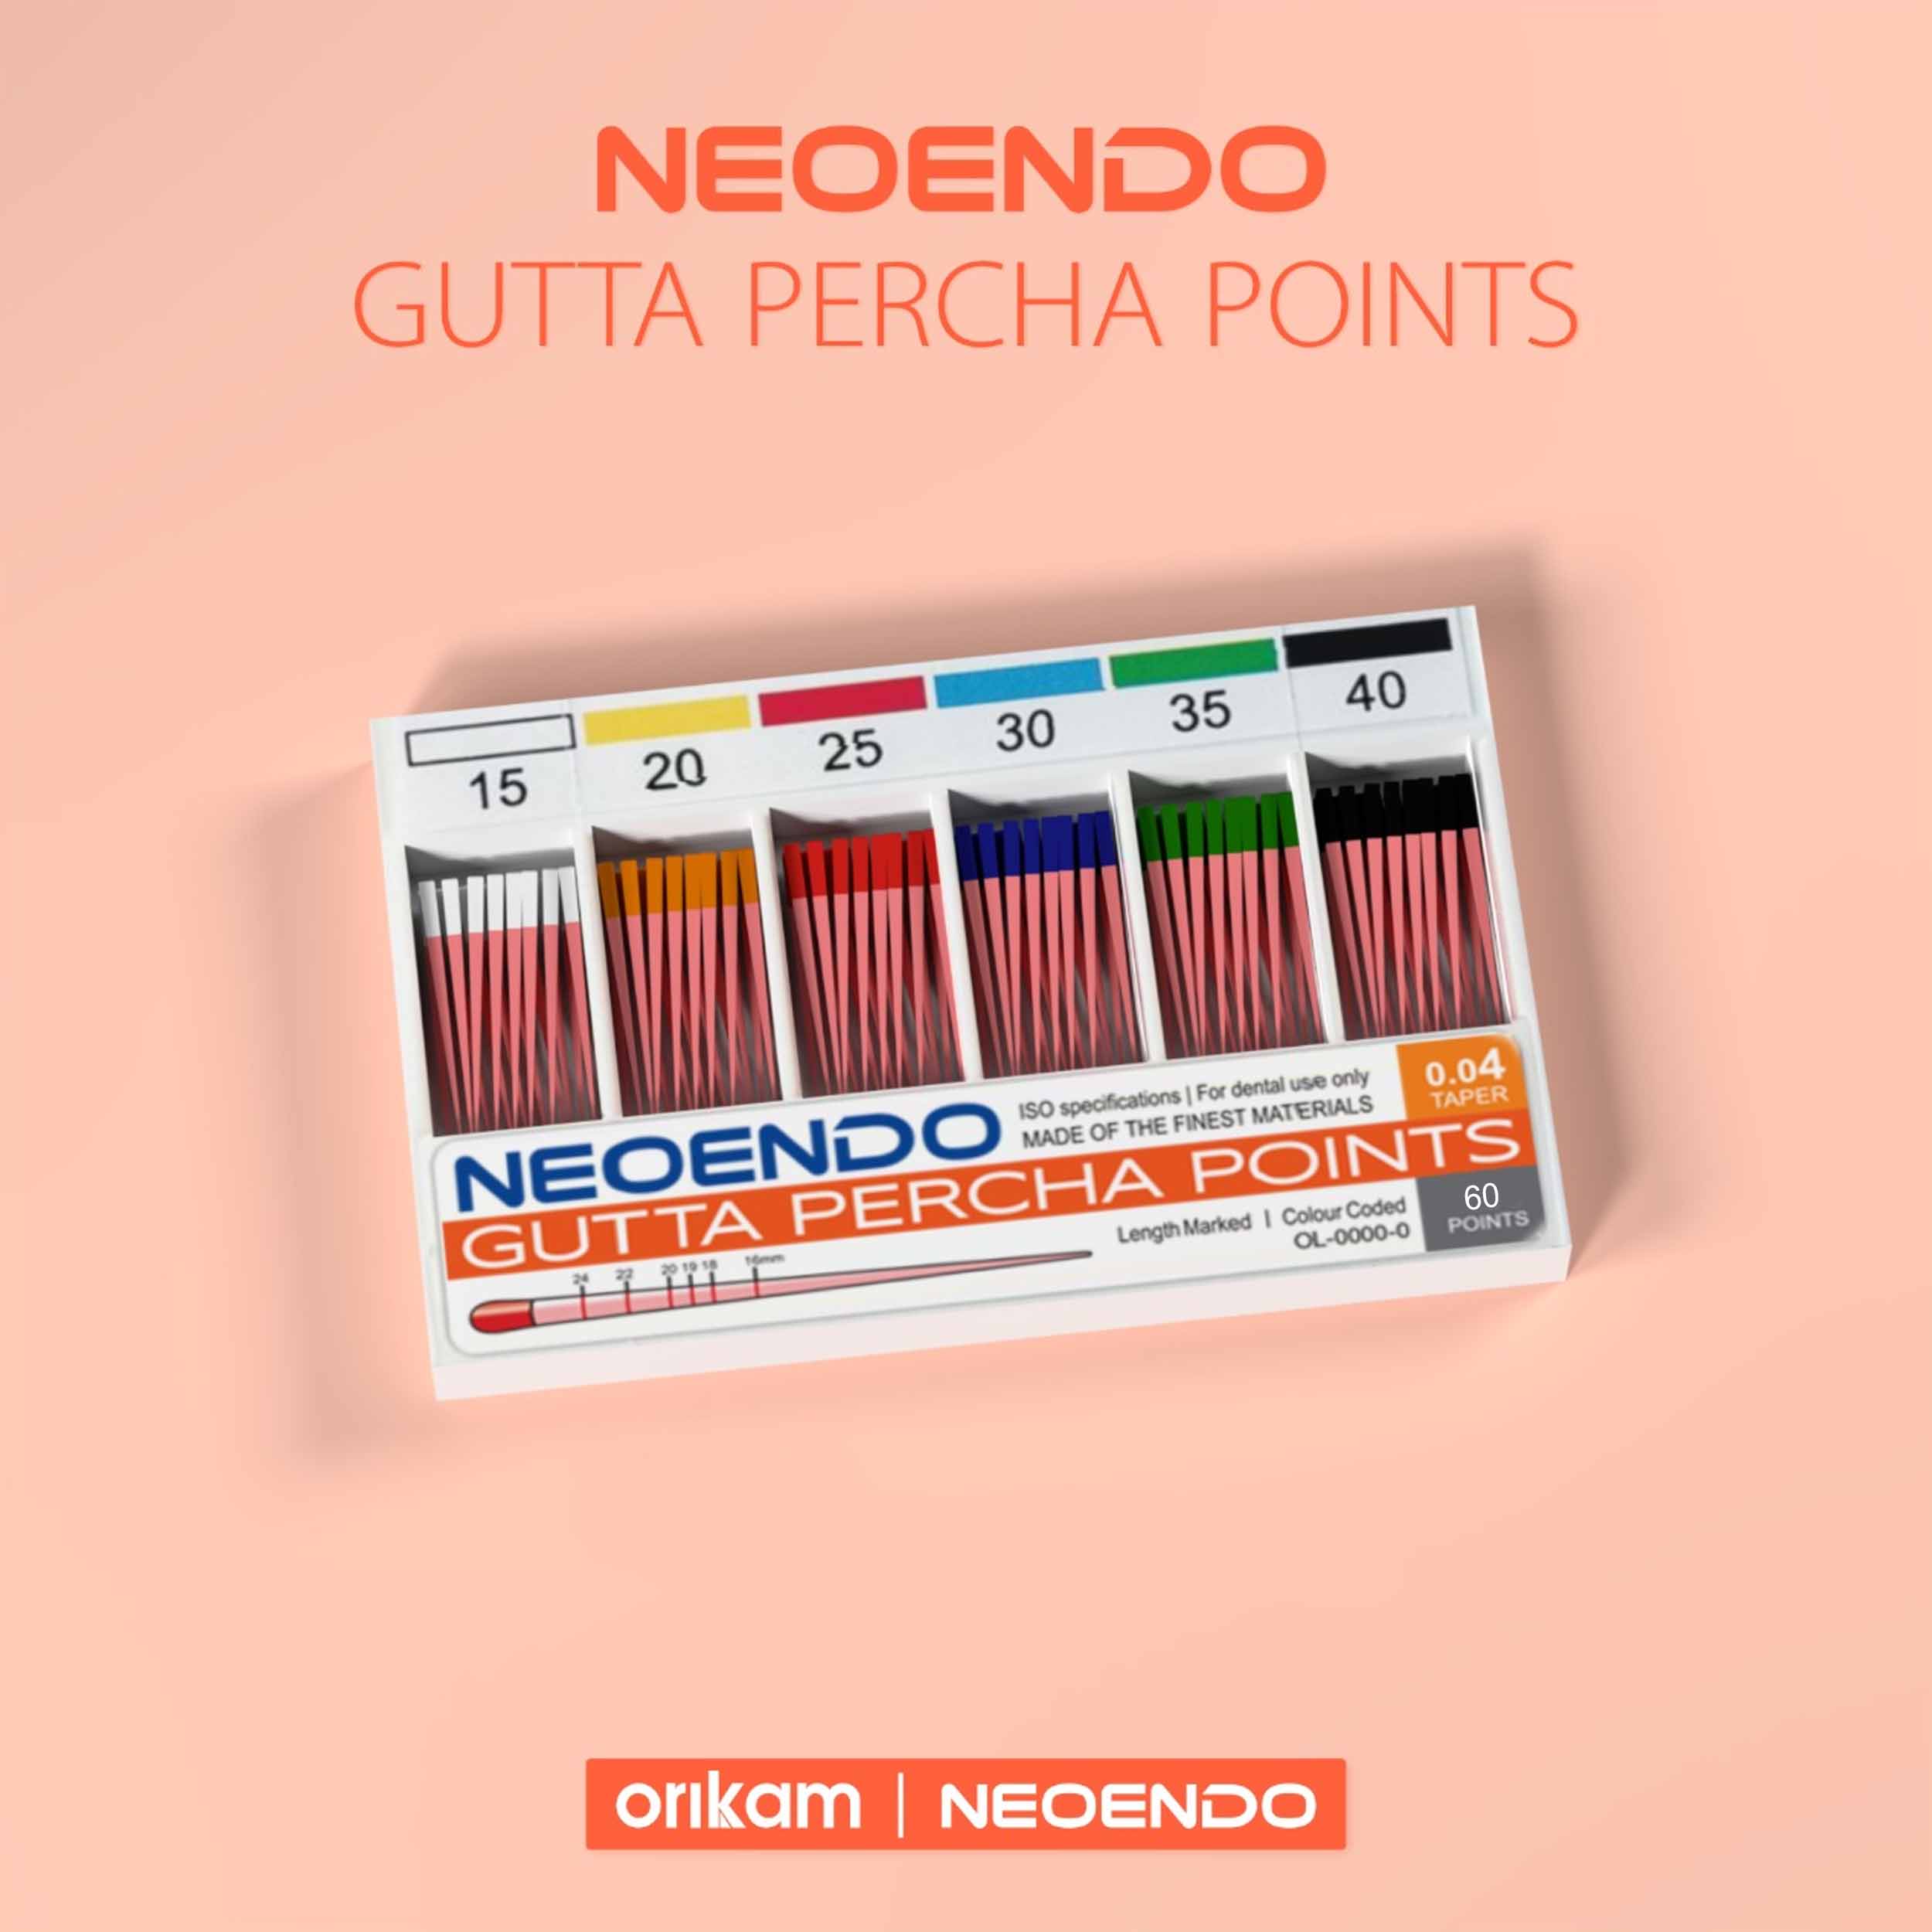 Neoendo Gutta Percha Points 30 6%